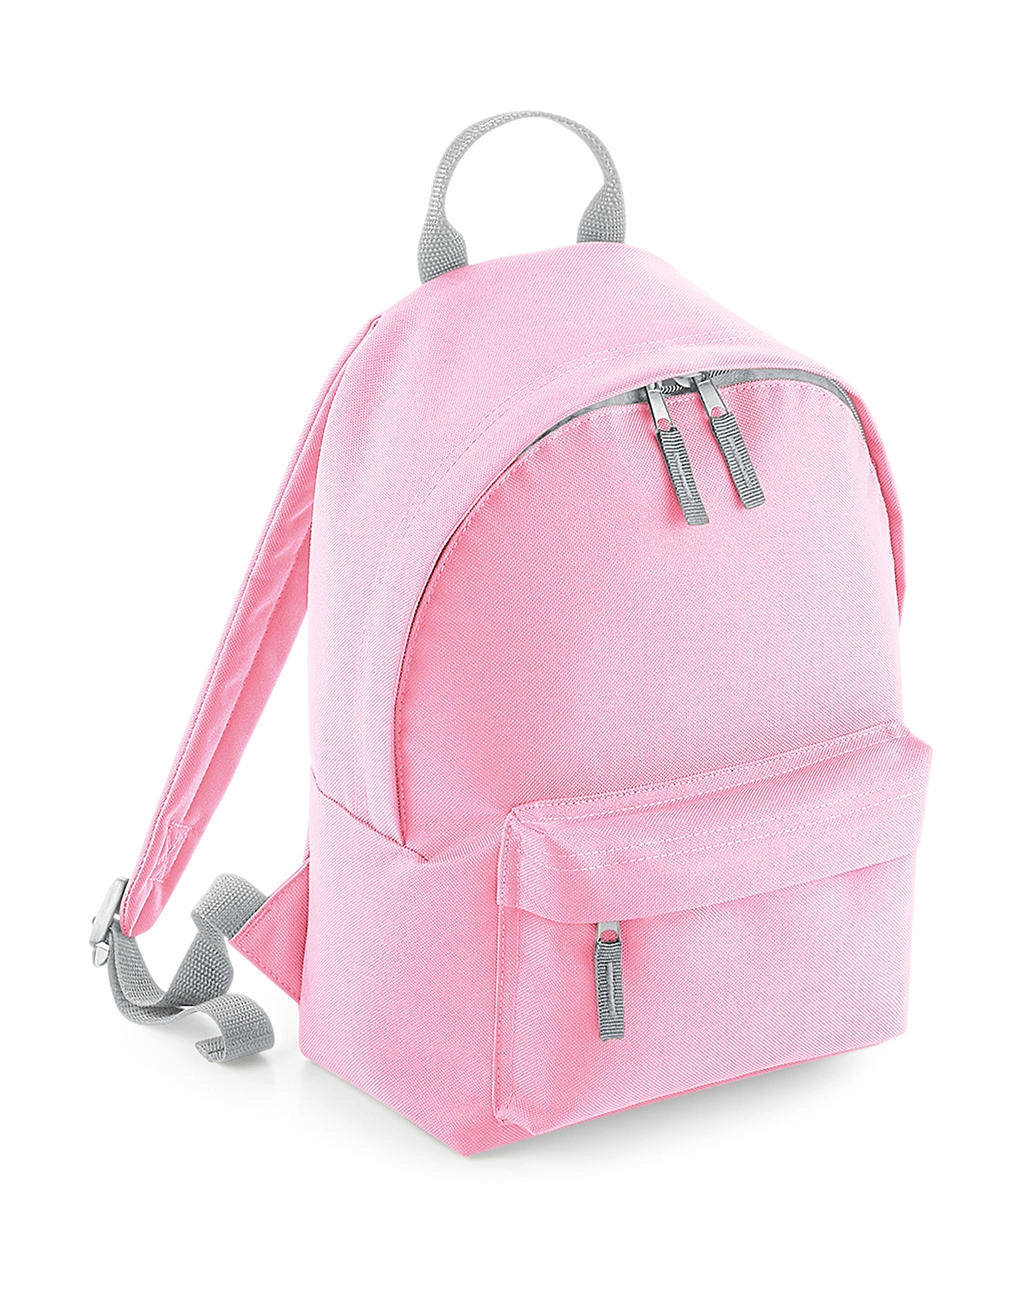 Mini Fashion Backpack zum Besticken und Bedrucken in der Farbe Classic Pink/Light Grey mit Ihren Logo, Schriftzug oder Motiv.